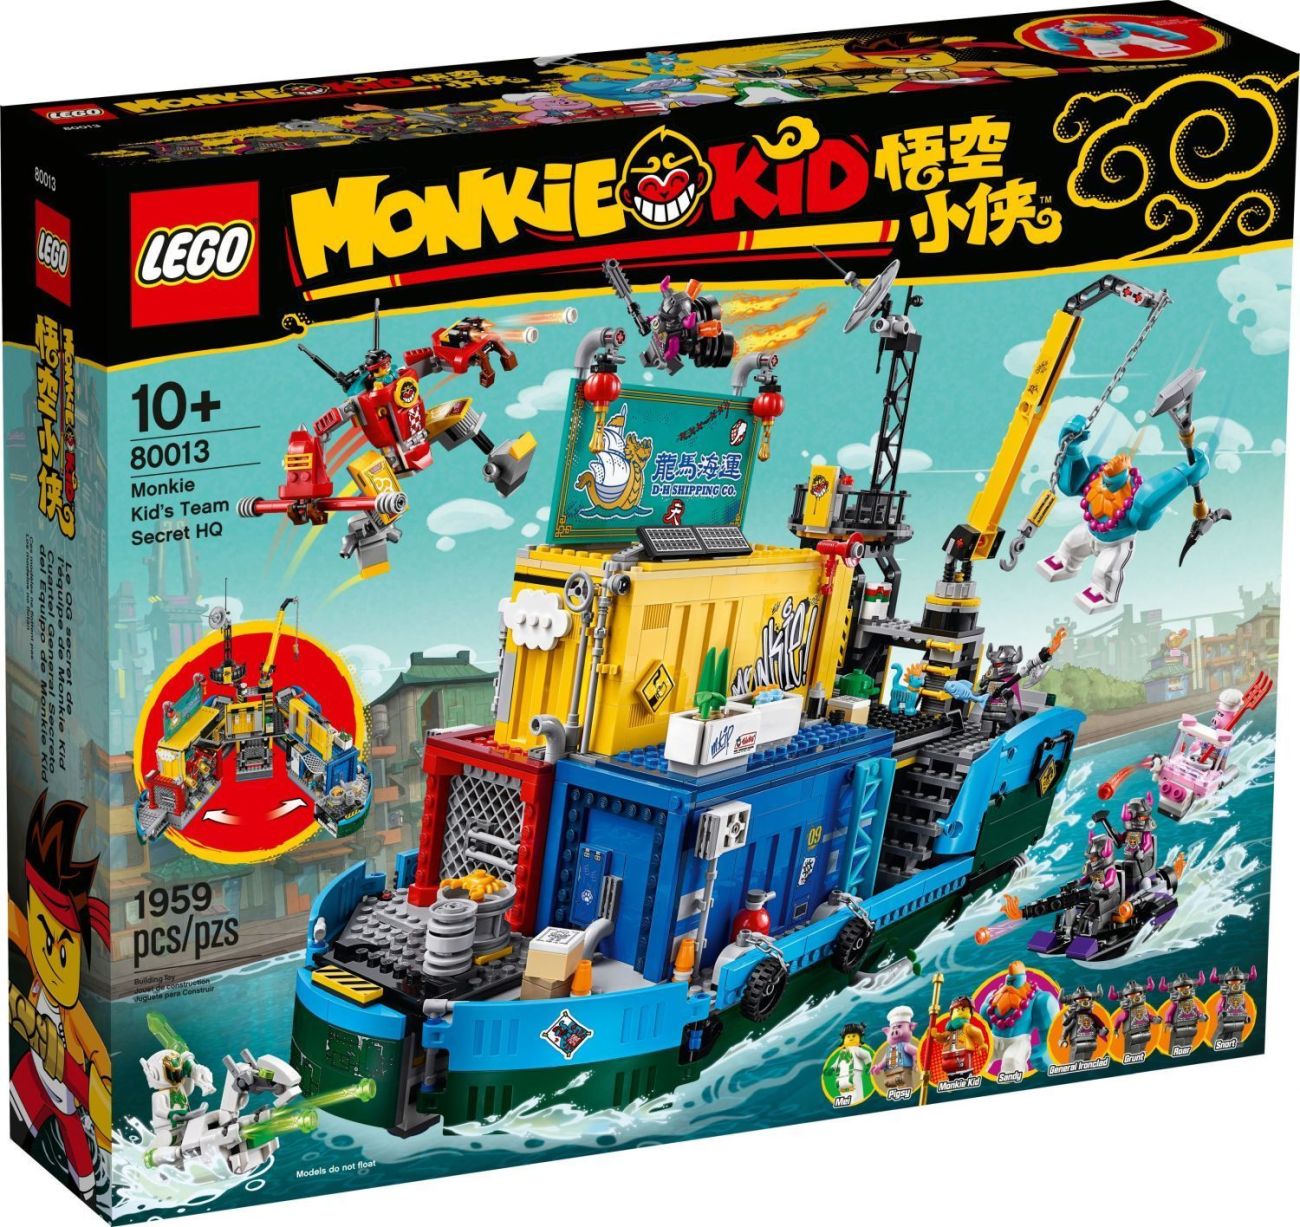 LEGO Monkie Kid - 80013 Monkie Kid’s Team Secret HQ (Foto: LEGO)